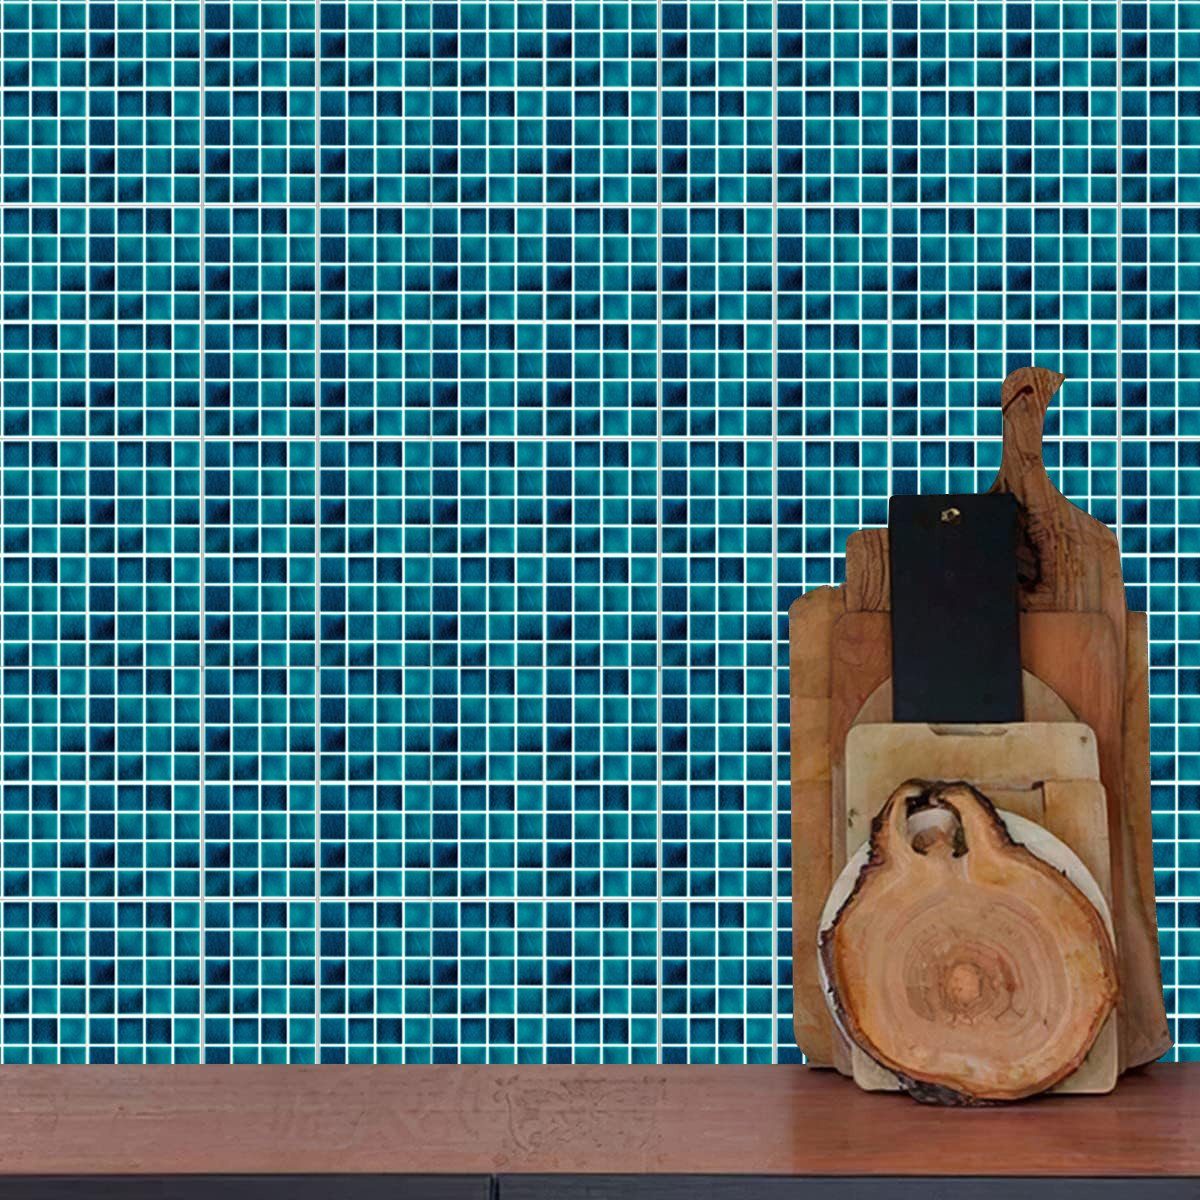 1 Fliesenaufkleber Jormftte für Mehrfarbig Wandfliesen Küche Aufkleber,Stein-Effekt-Mosaik Wandtattoo